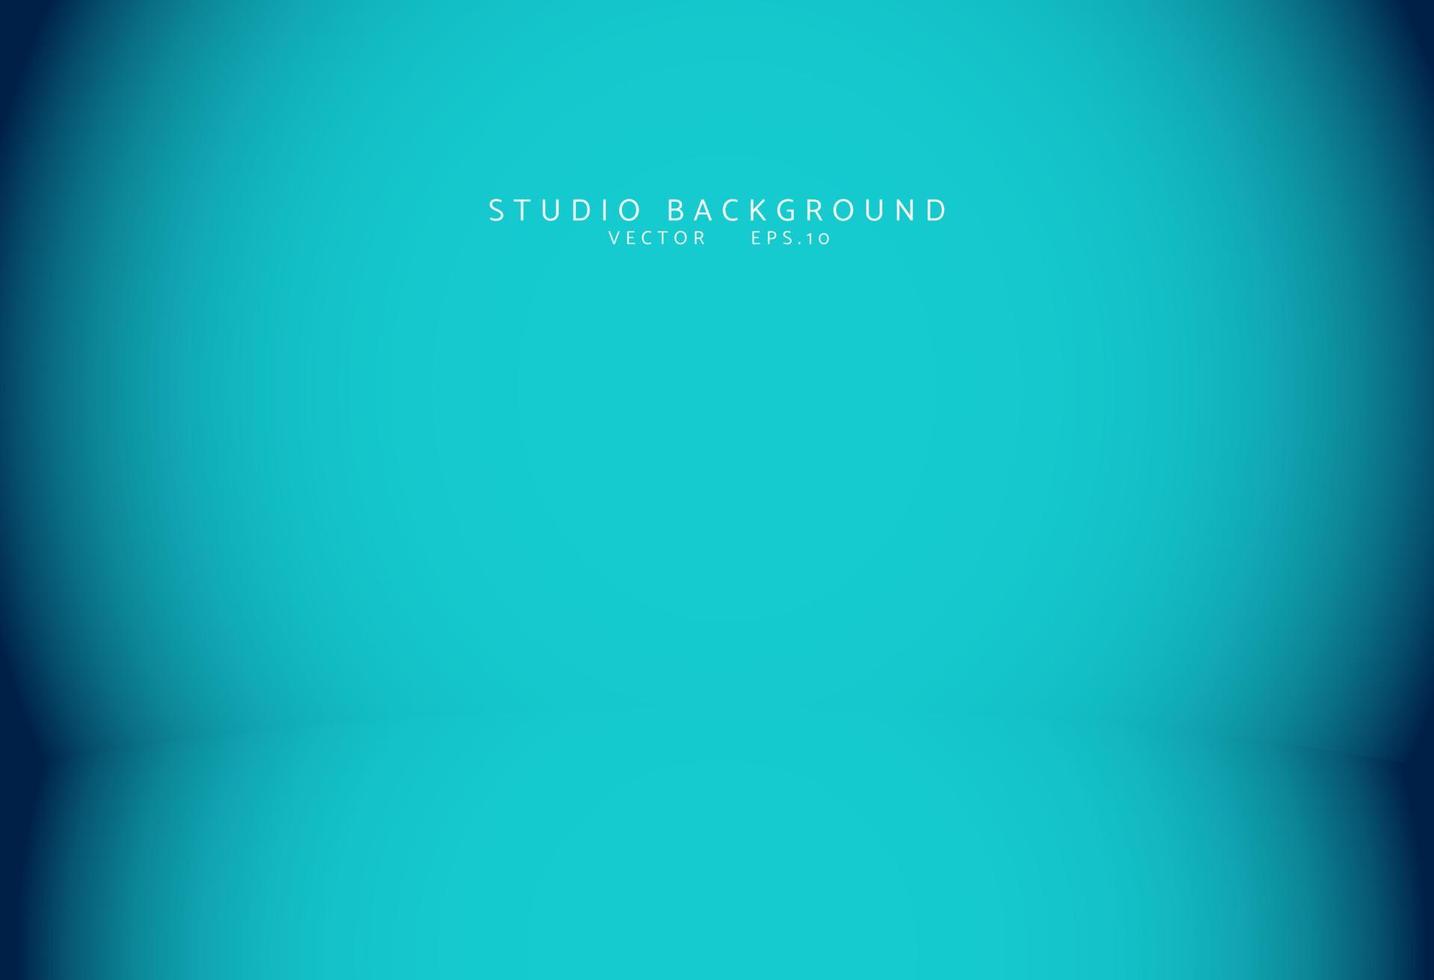 Empty blue studio room Background vector